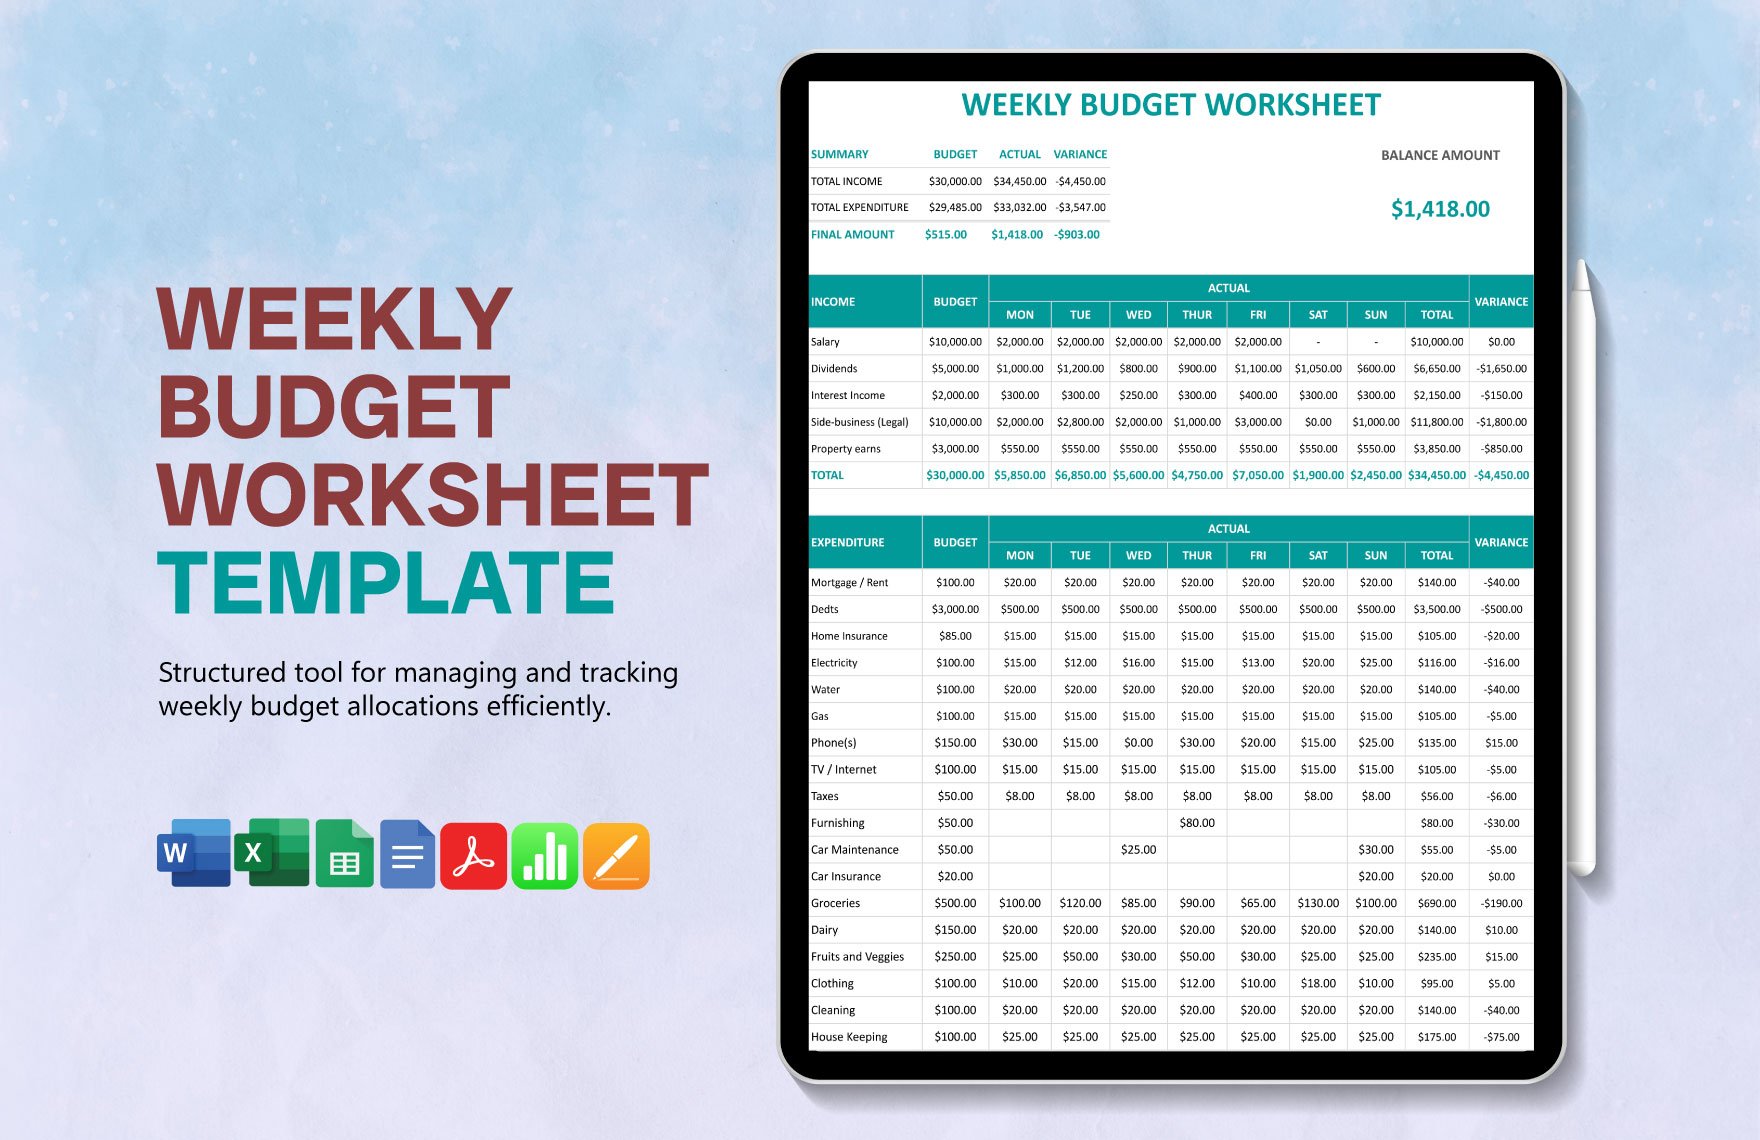 Weekly Budget Worksheet Template